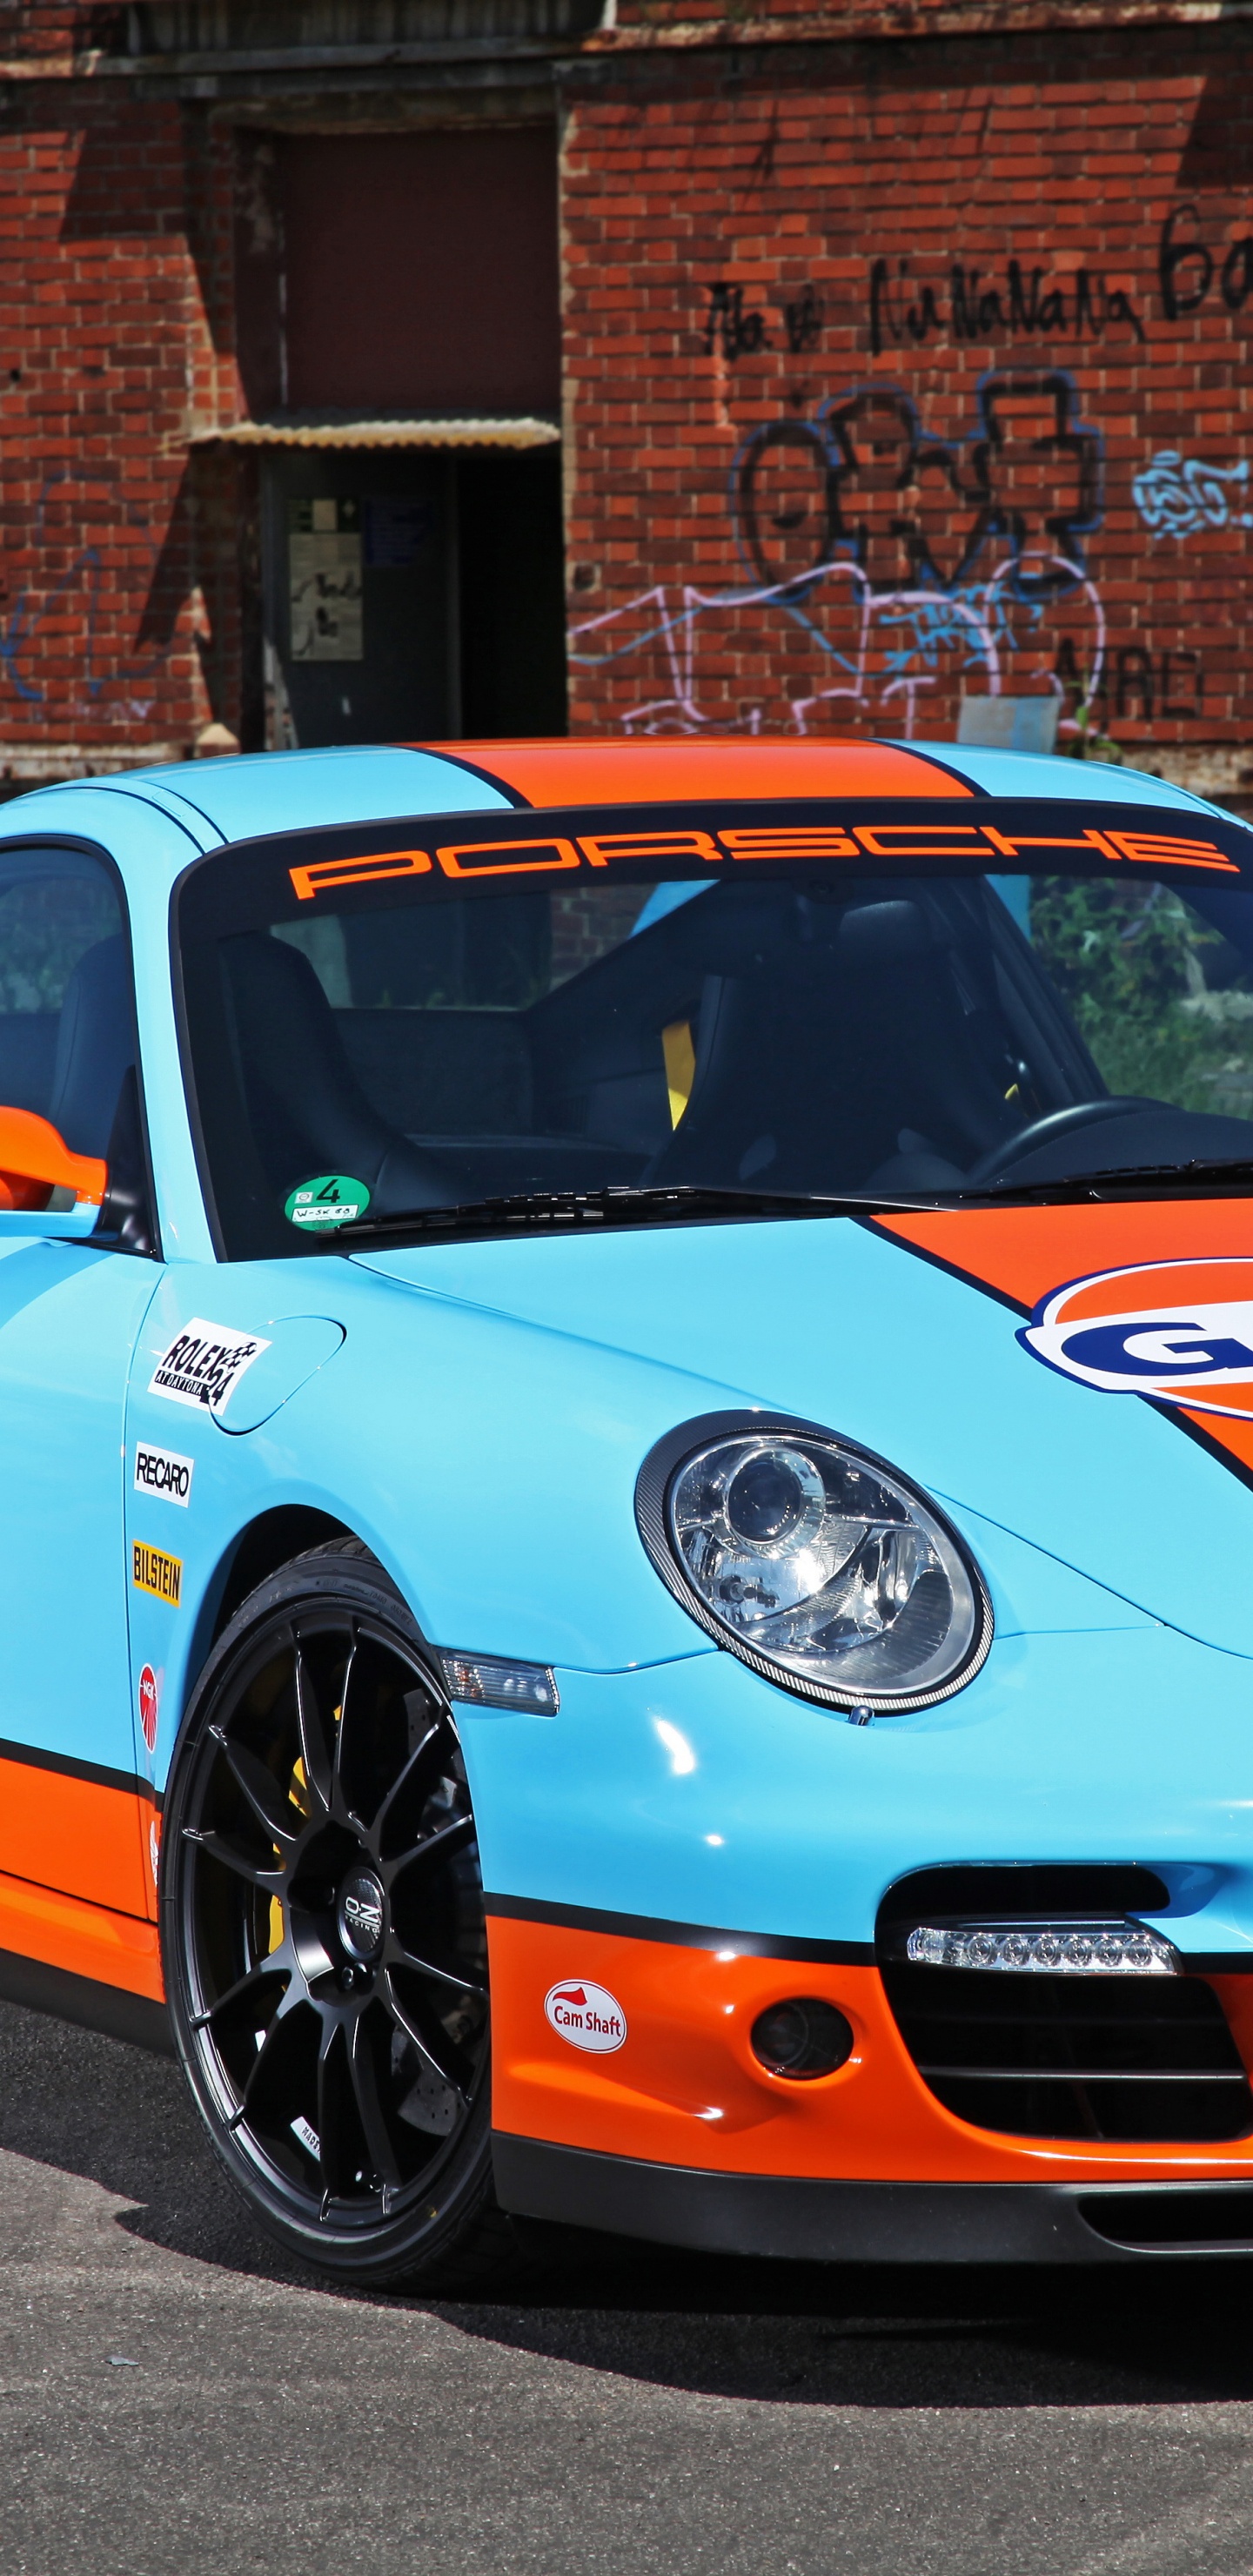 Porsche 911 Bleue et Blanche Garée Près D'un Immeuble en Briques Brunes Pendant la Journée. Wallpaper in 1440x2960 Resolution